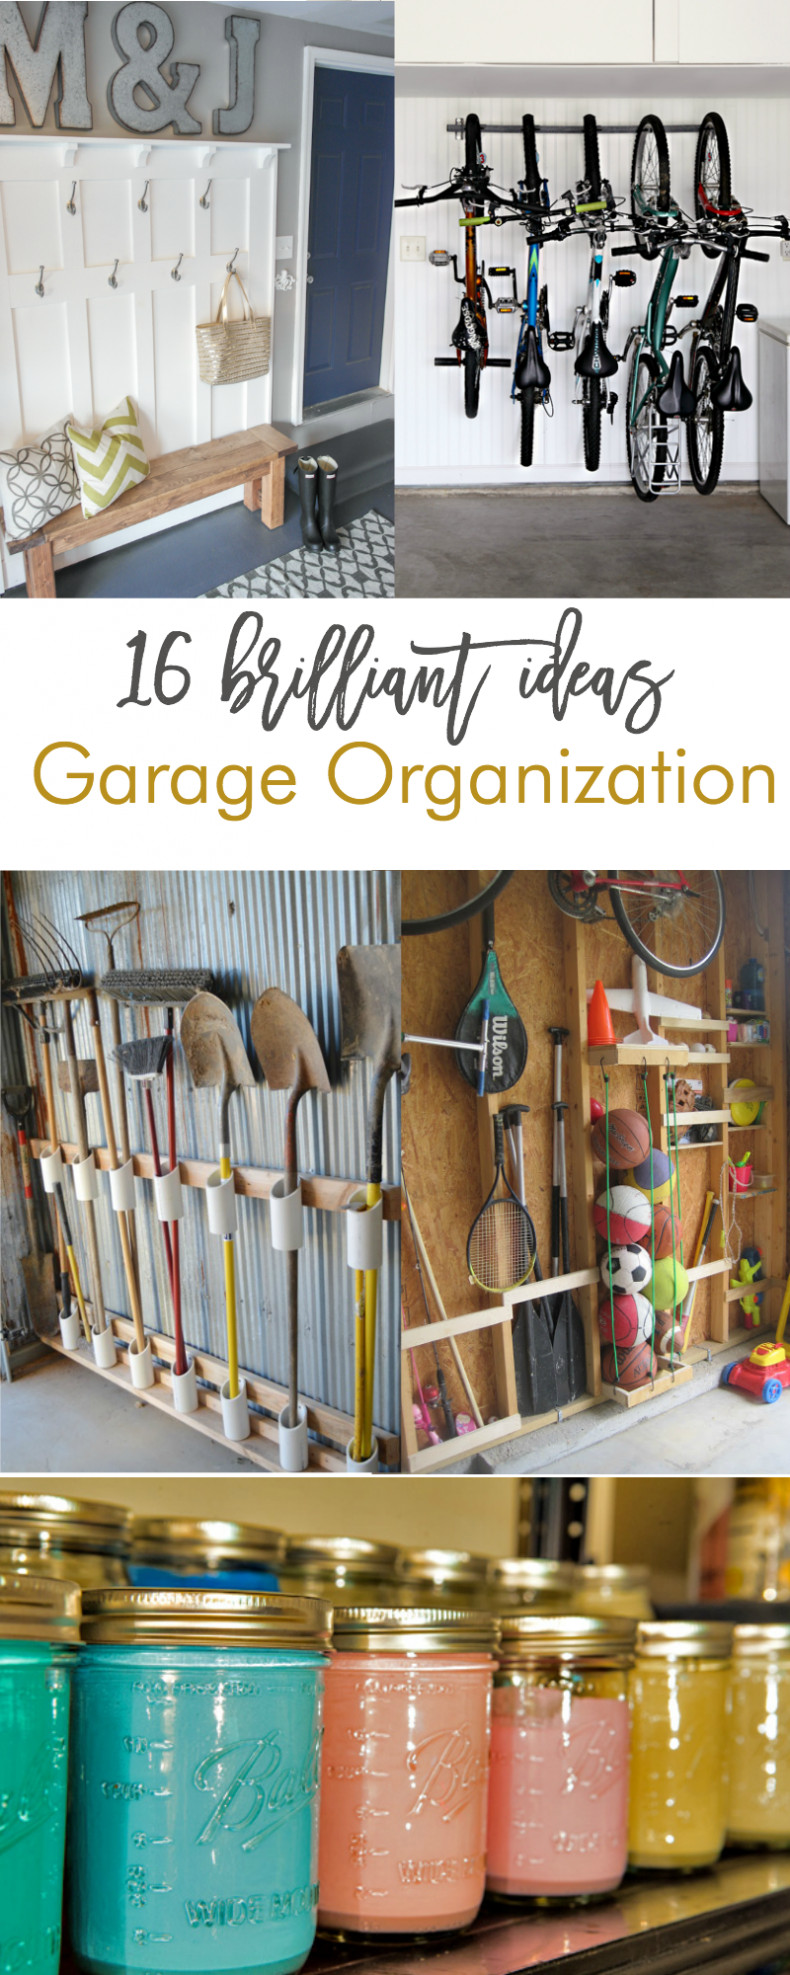 Organizing Garage Ideas
 16 Brilliant DIY Garage Organization Ideas